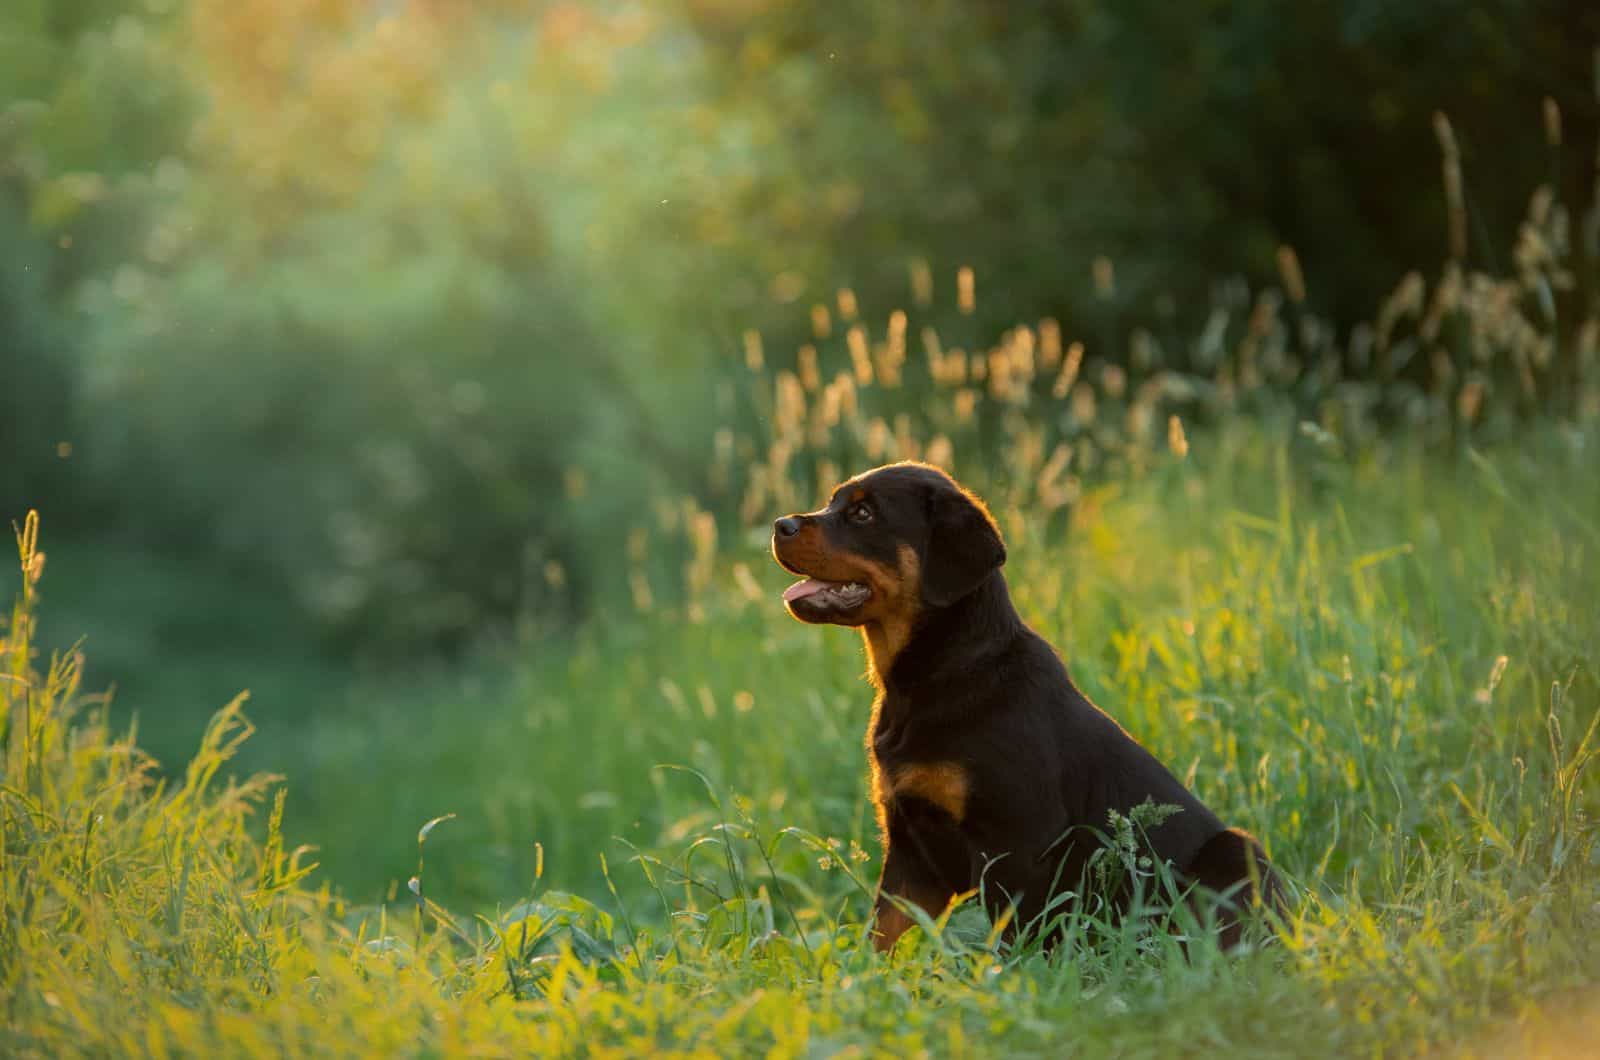 Rottweiler puppy sitting on grass